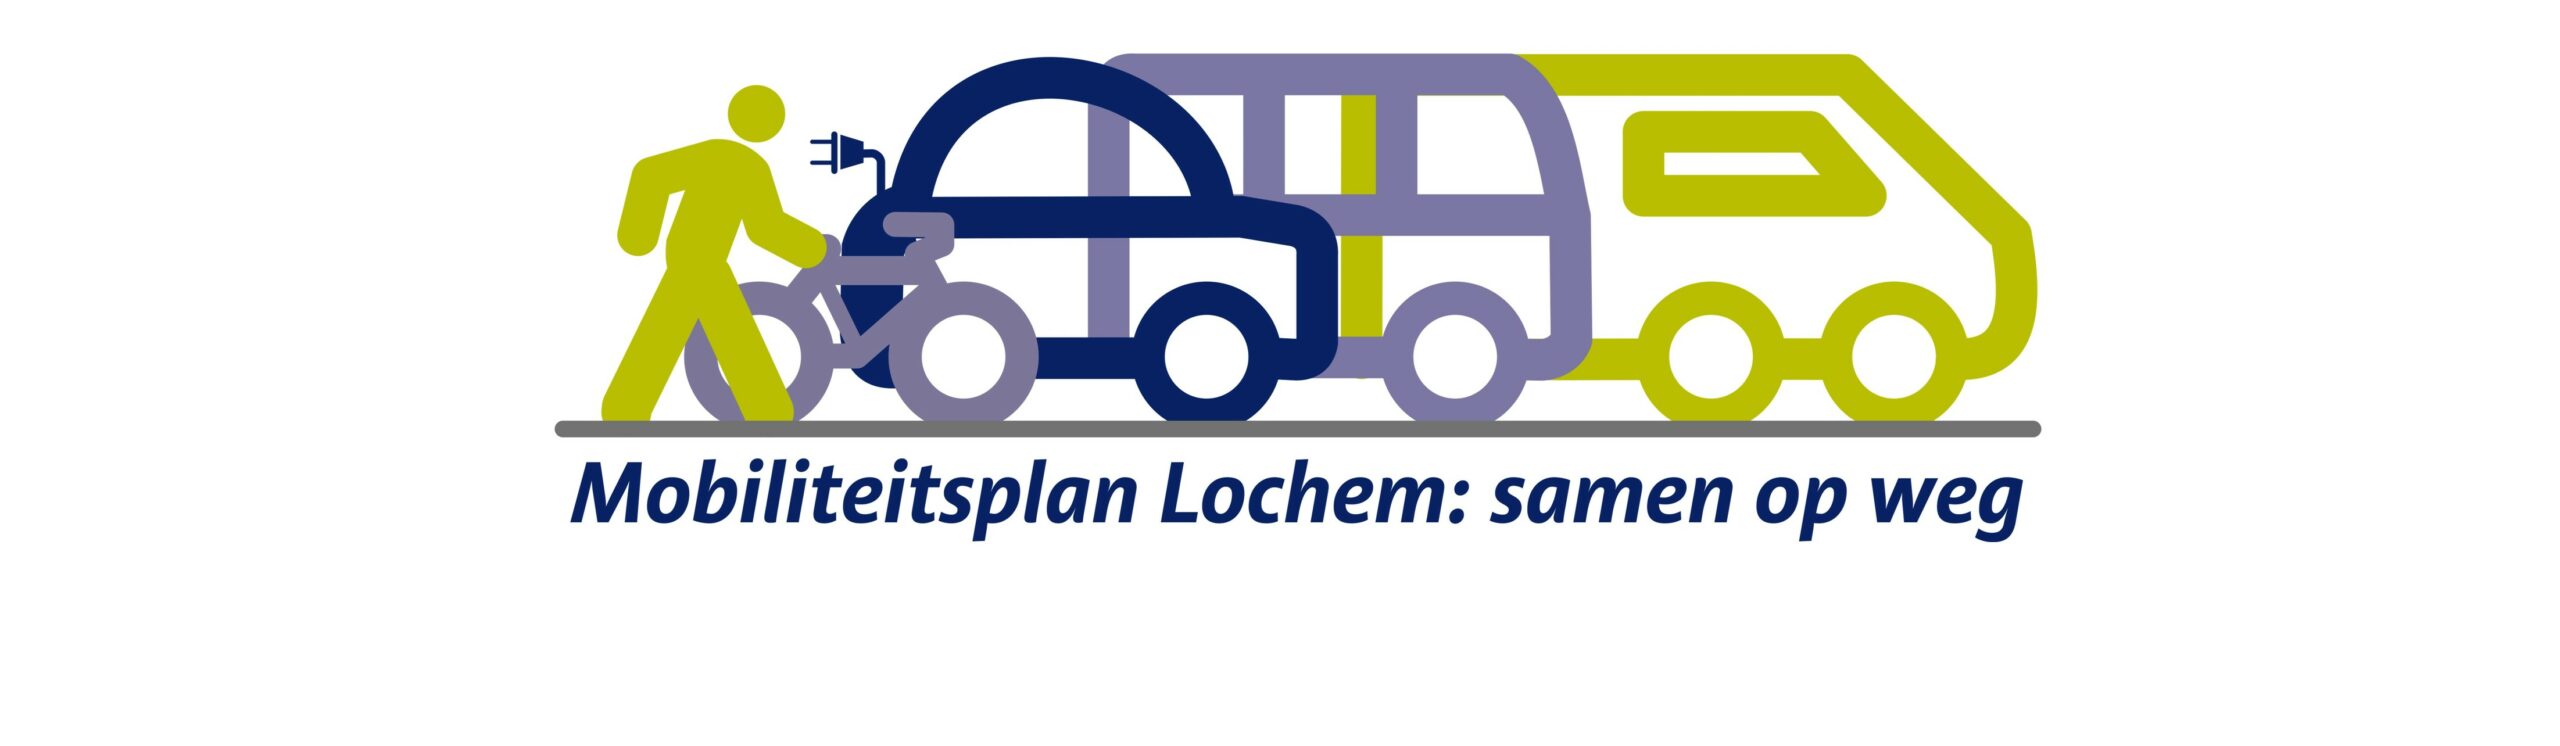 Mobiliteitsplan Lochem